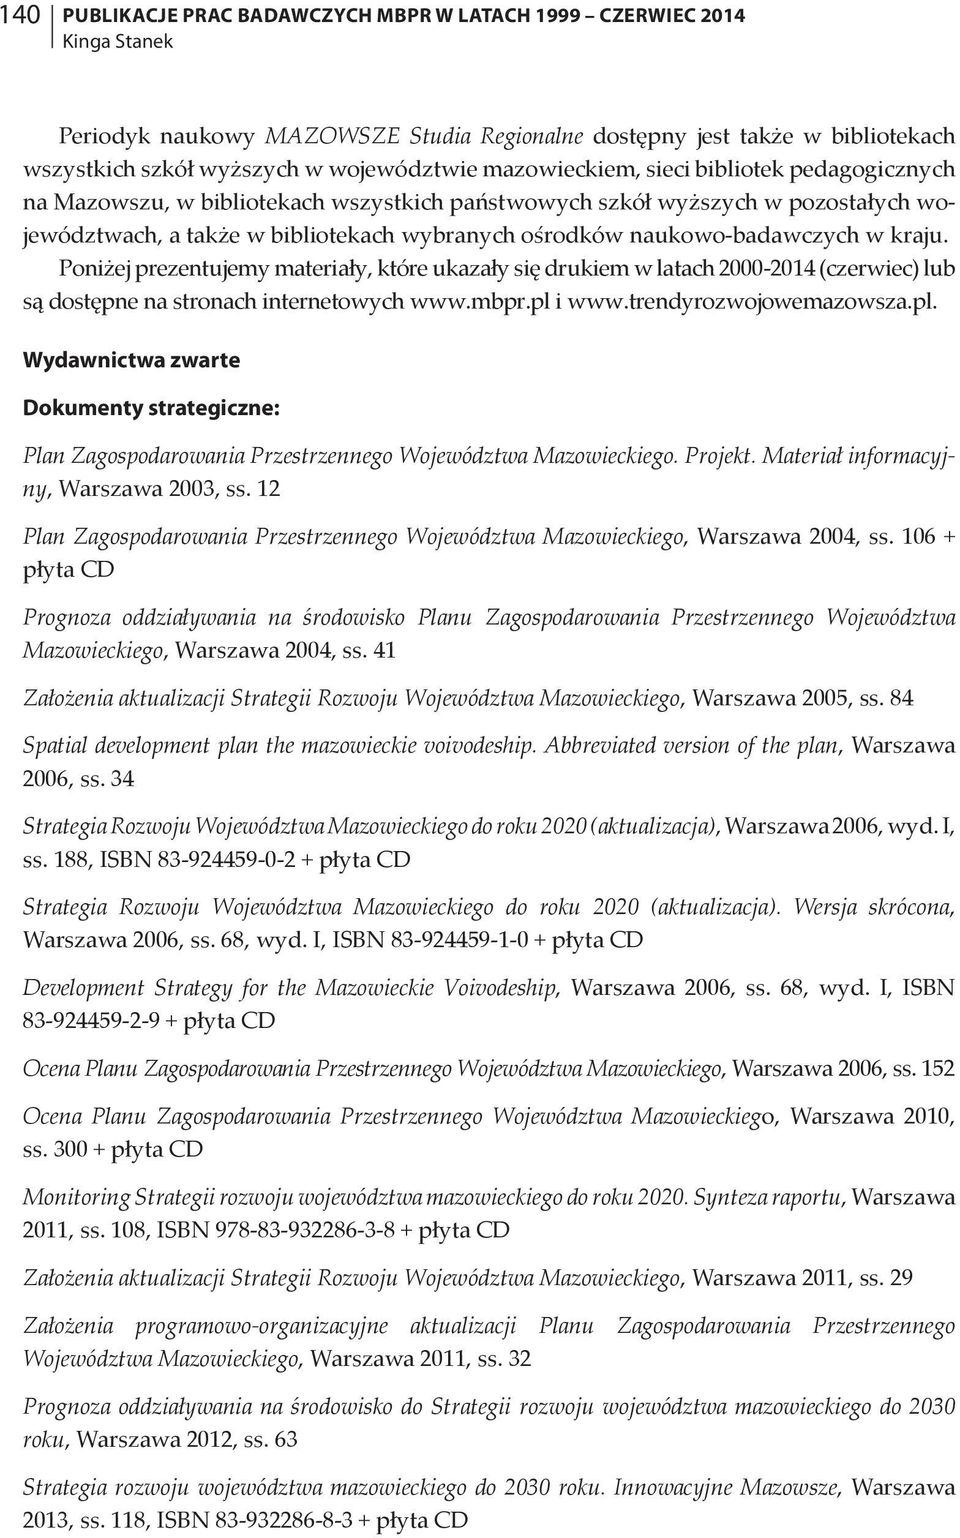 naukowo-badawczych w kraju. Poniżej prezentujemy materiały, które ukazały się drukiem w latach 2000-2014 (czerwiec) lub są dostępne na stronach internetowych www.mbpr.pl i www.trendyrozwojowemazowsza.